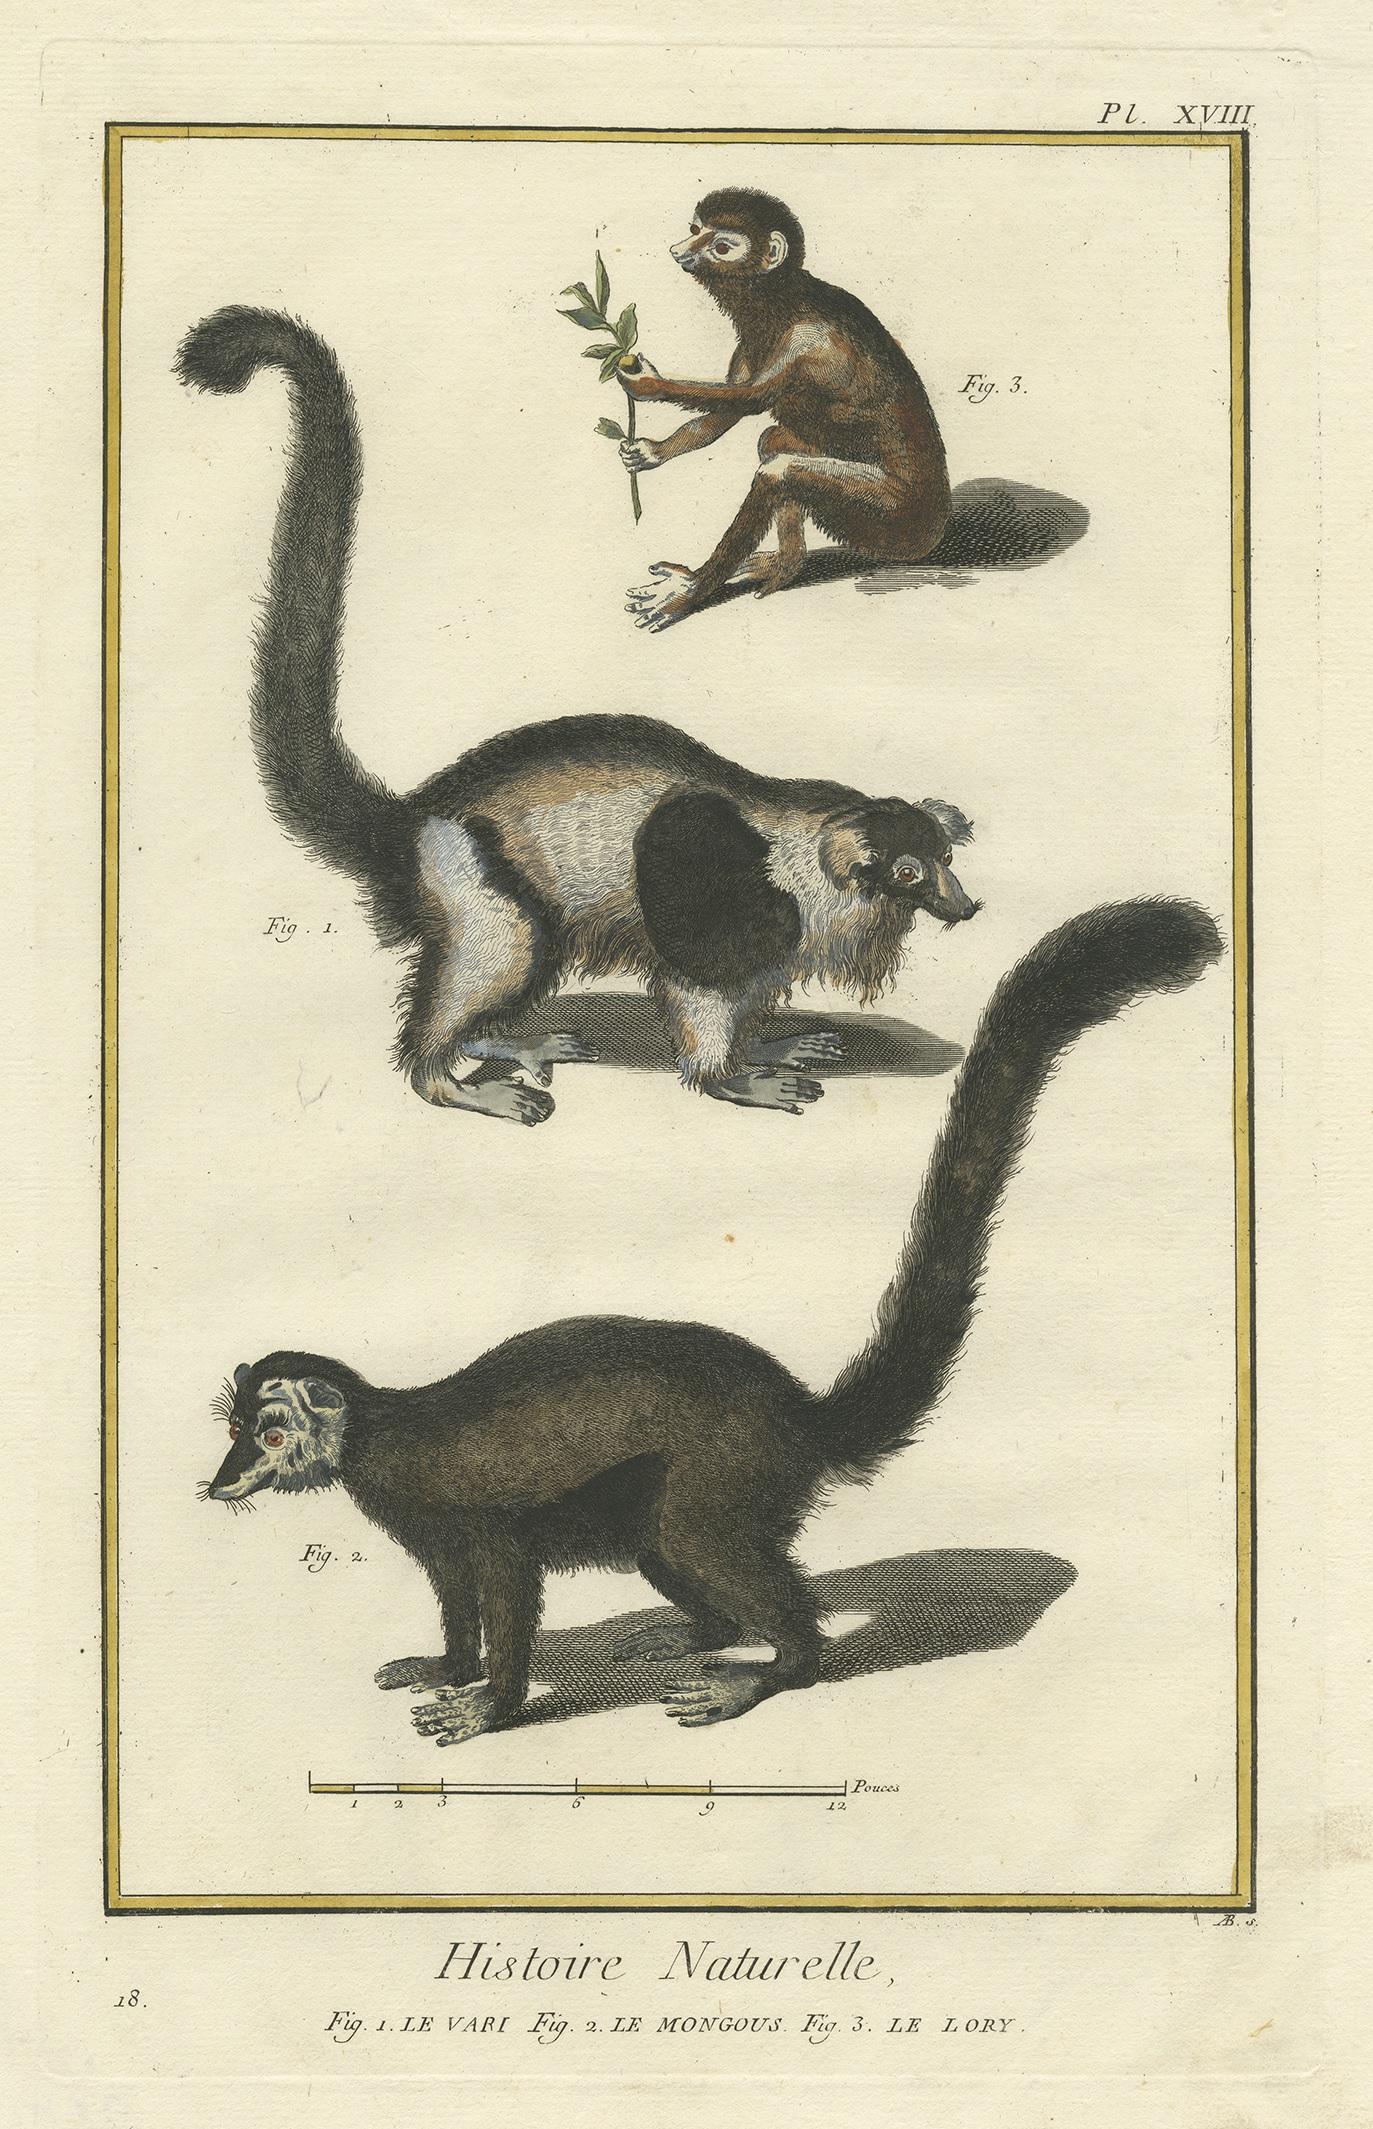 Antique print titled '1. Le Vari 2. Le Mongous 3. Le Lory'. Handcolored engraving of a Vari monkey, mongoose and lori. This print originates from 'Encyclopédie, Ou Dictionnaire Raisonné Des Sciences, Des Arts (..)' by Diderot.